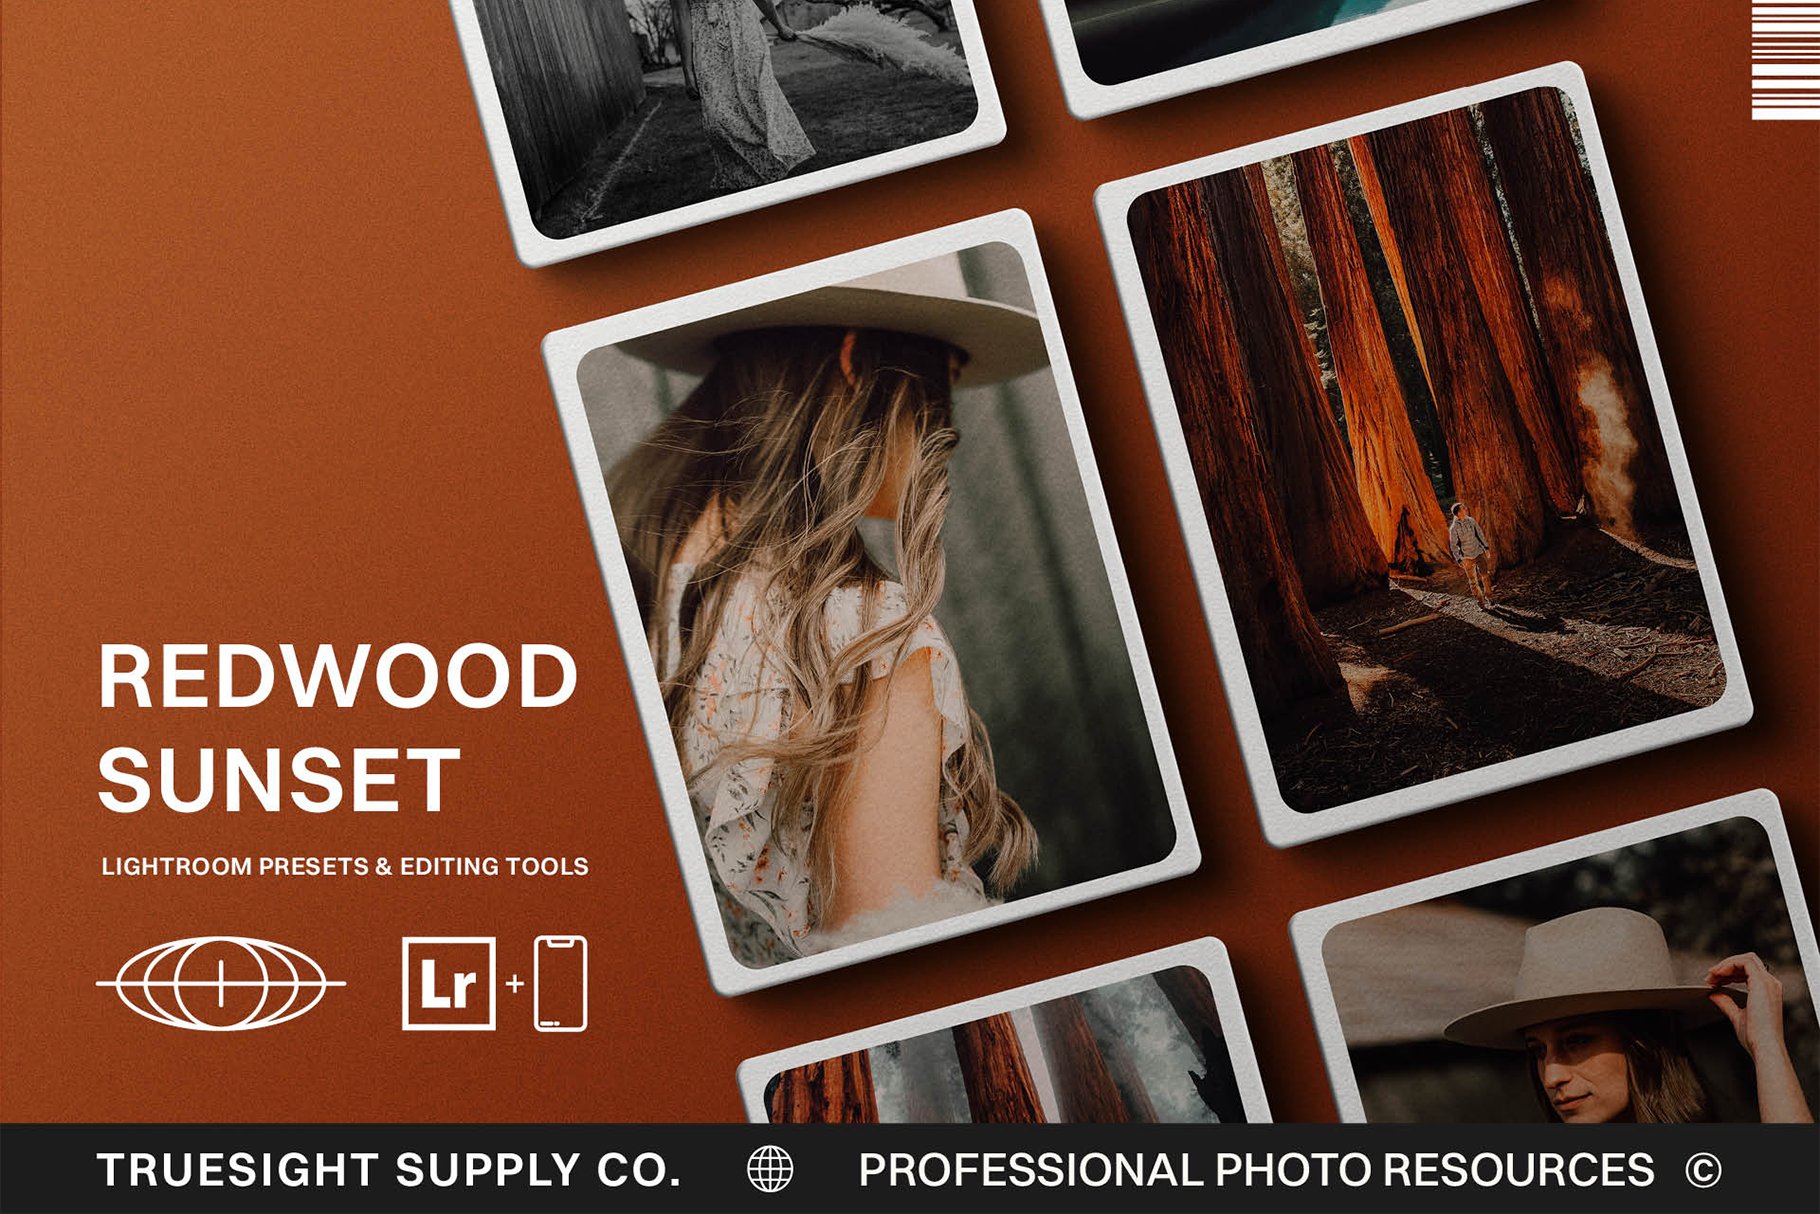 Redwood Sunset - Lightroom Presetscover image.